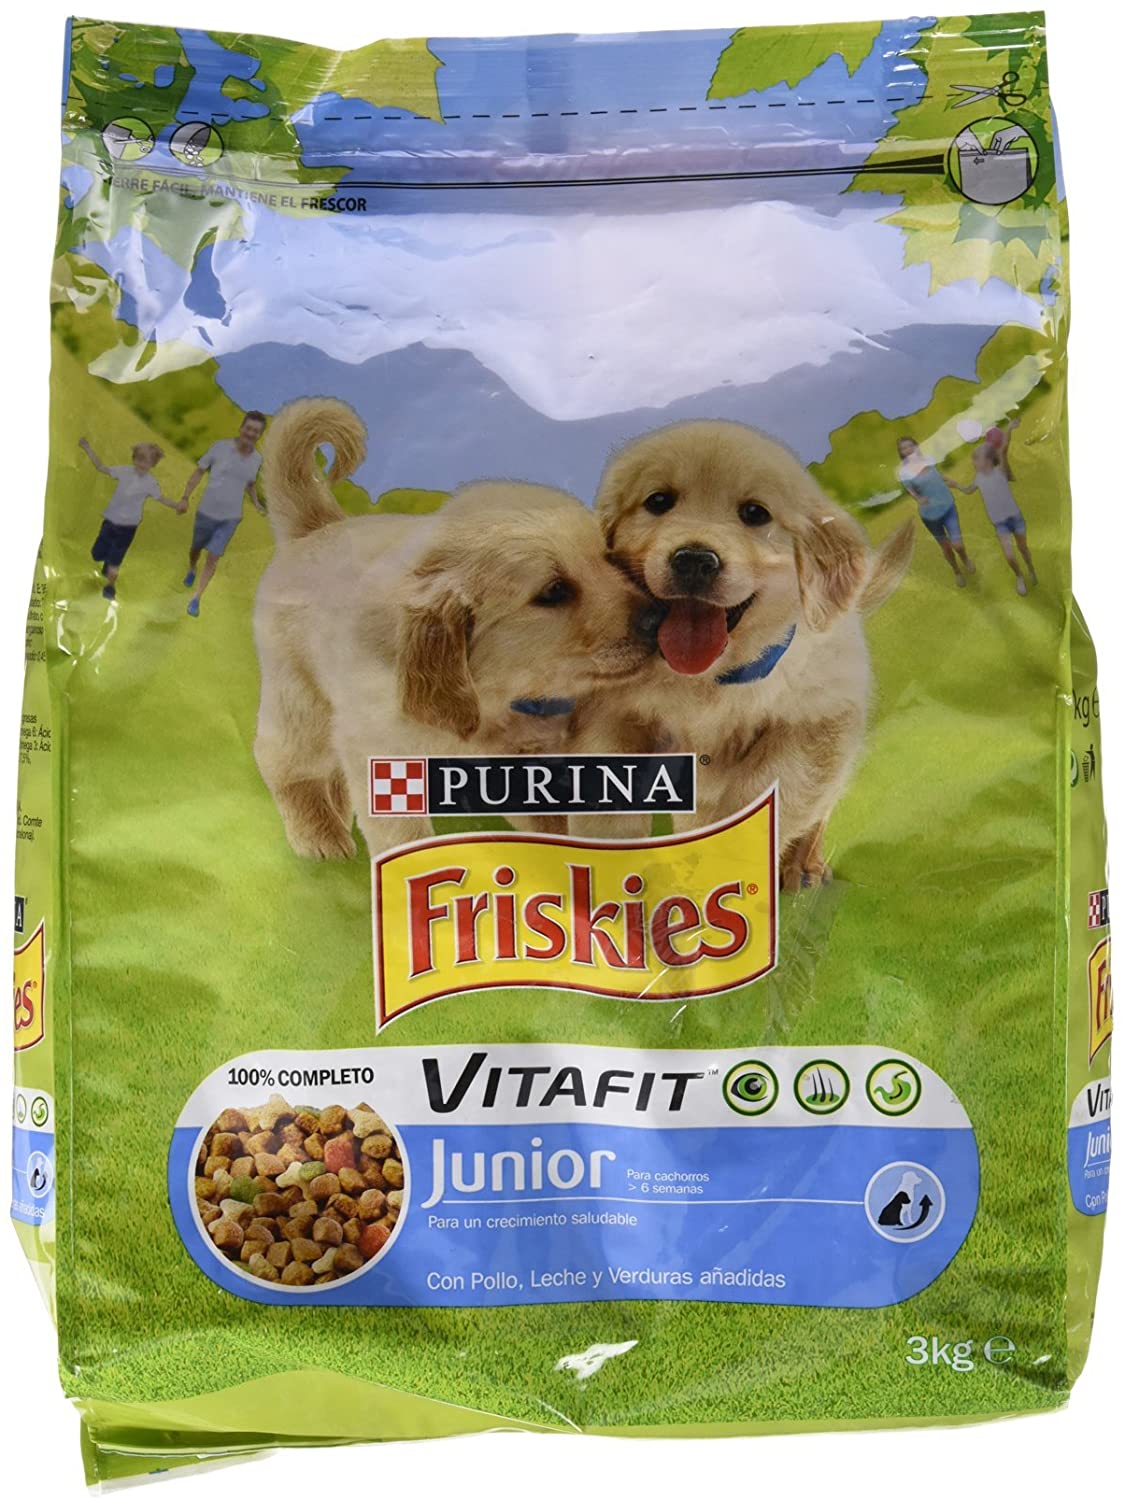  Friskies - VitaFit Junior Cachorros con Pollo, leche y verduras añadidas, 3 Kg 